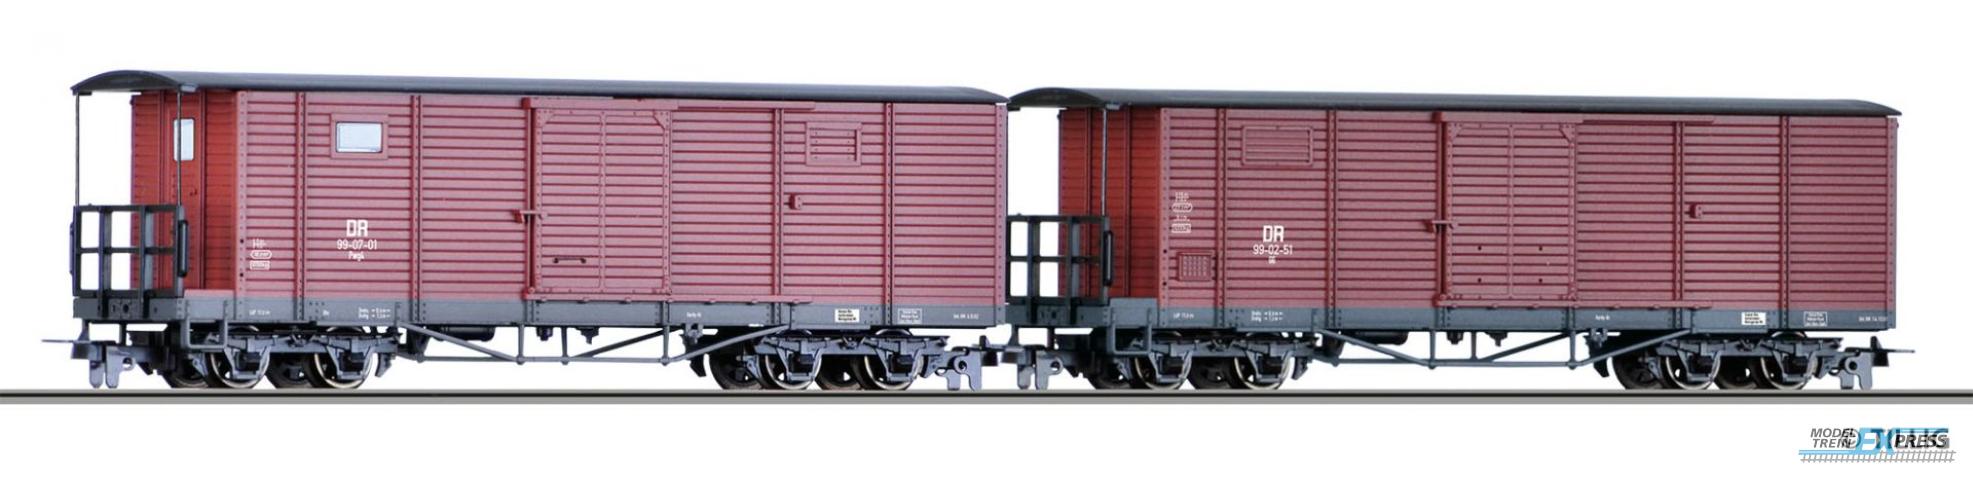 Tillig 15941 Güterwagenset der DR, bestehend aus zwei unterschiedlichen gedeckten Güterwagen, Ep. III